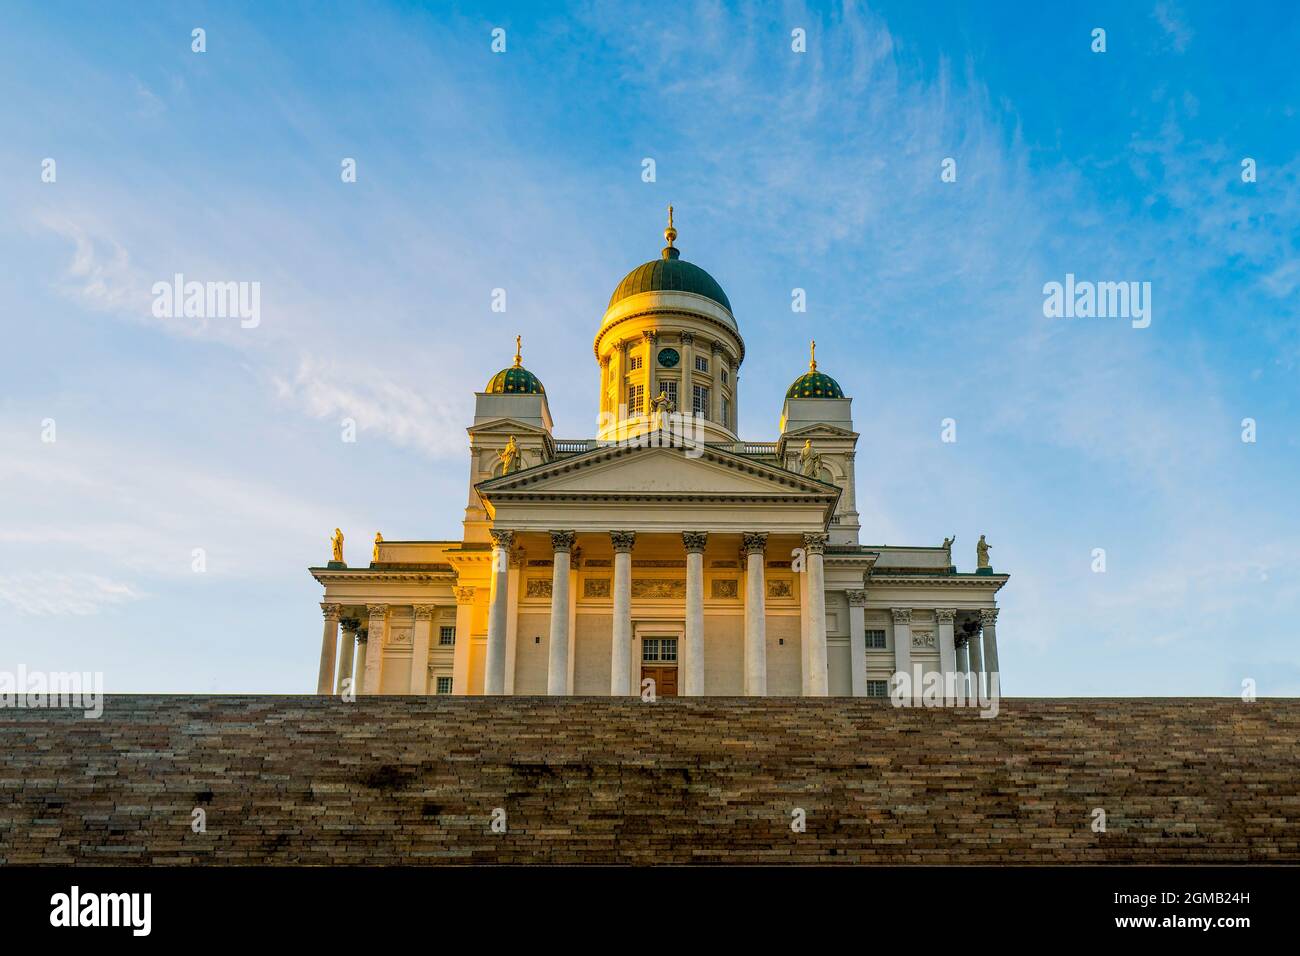 Die St.-Nikolaus-Kathedrale am Senatsplatz - eine der berühmtesten und beliebtesten Sehenswürdigkeiten Finnlands in Helsinki, die während der goldenen Stunden gefangen genommen wurde. Stockfoto